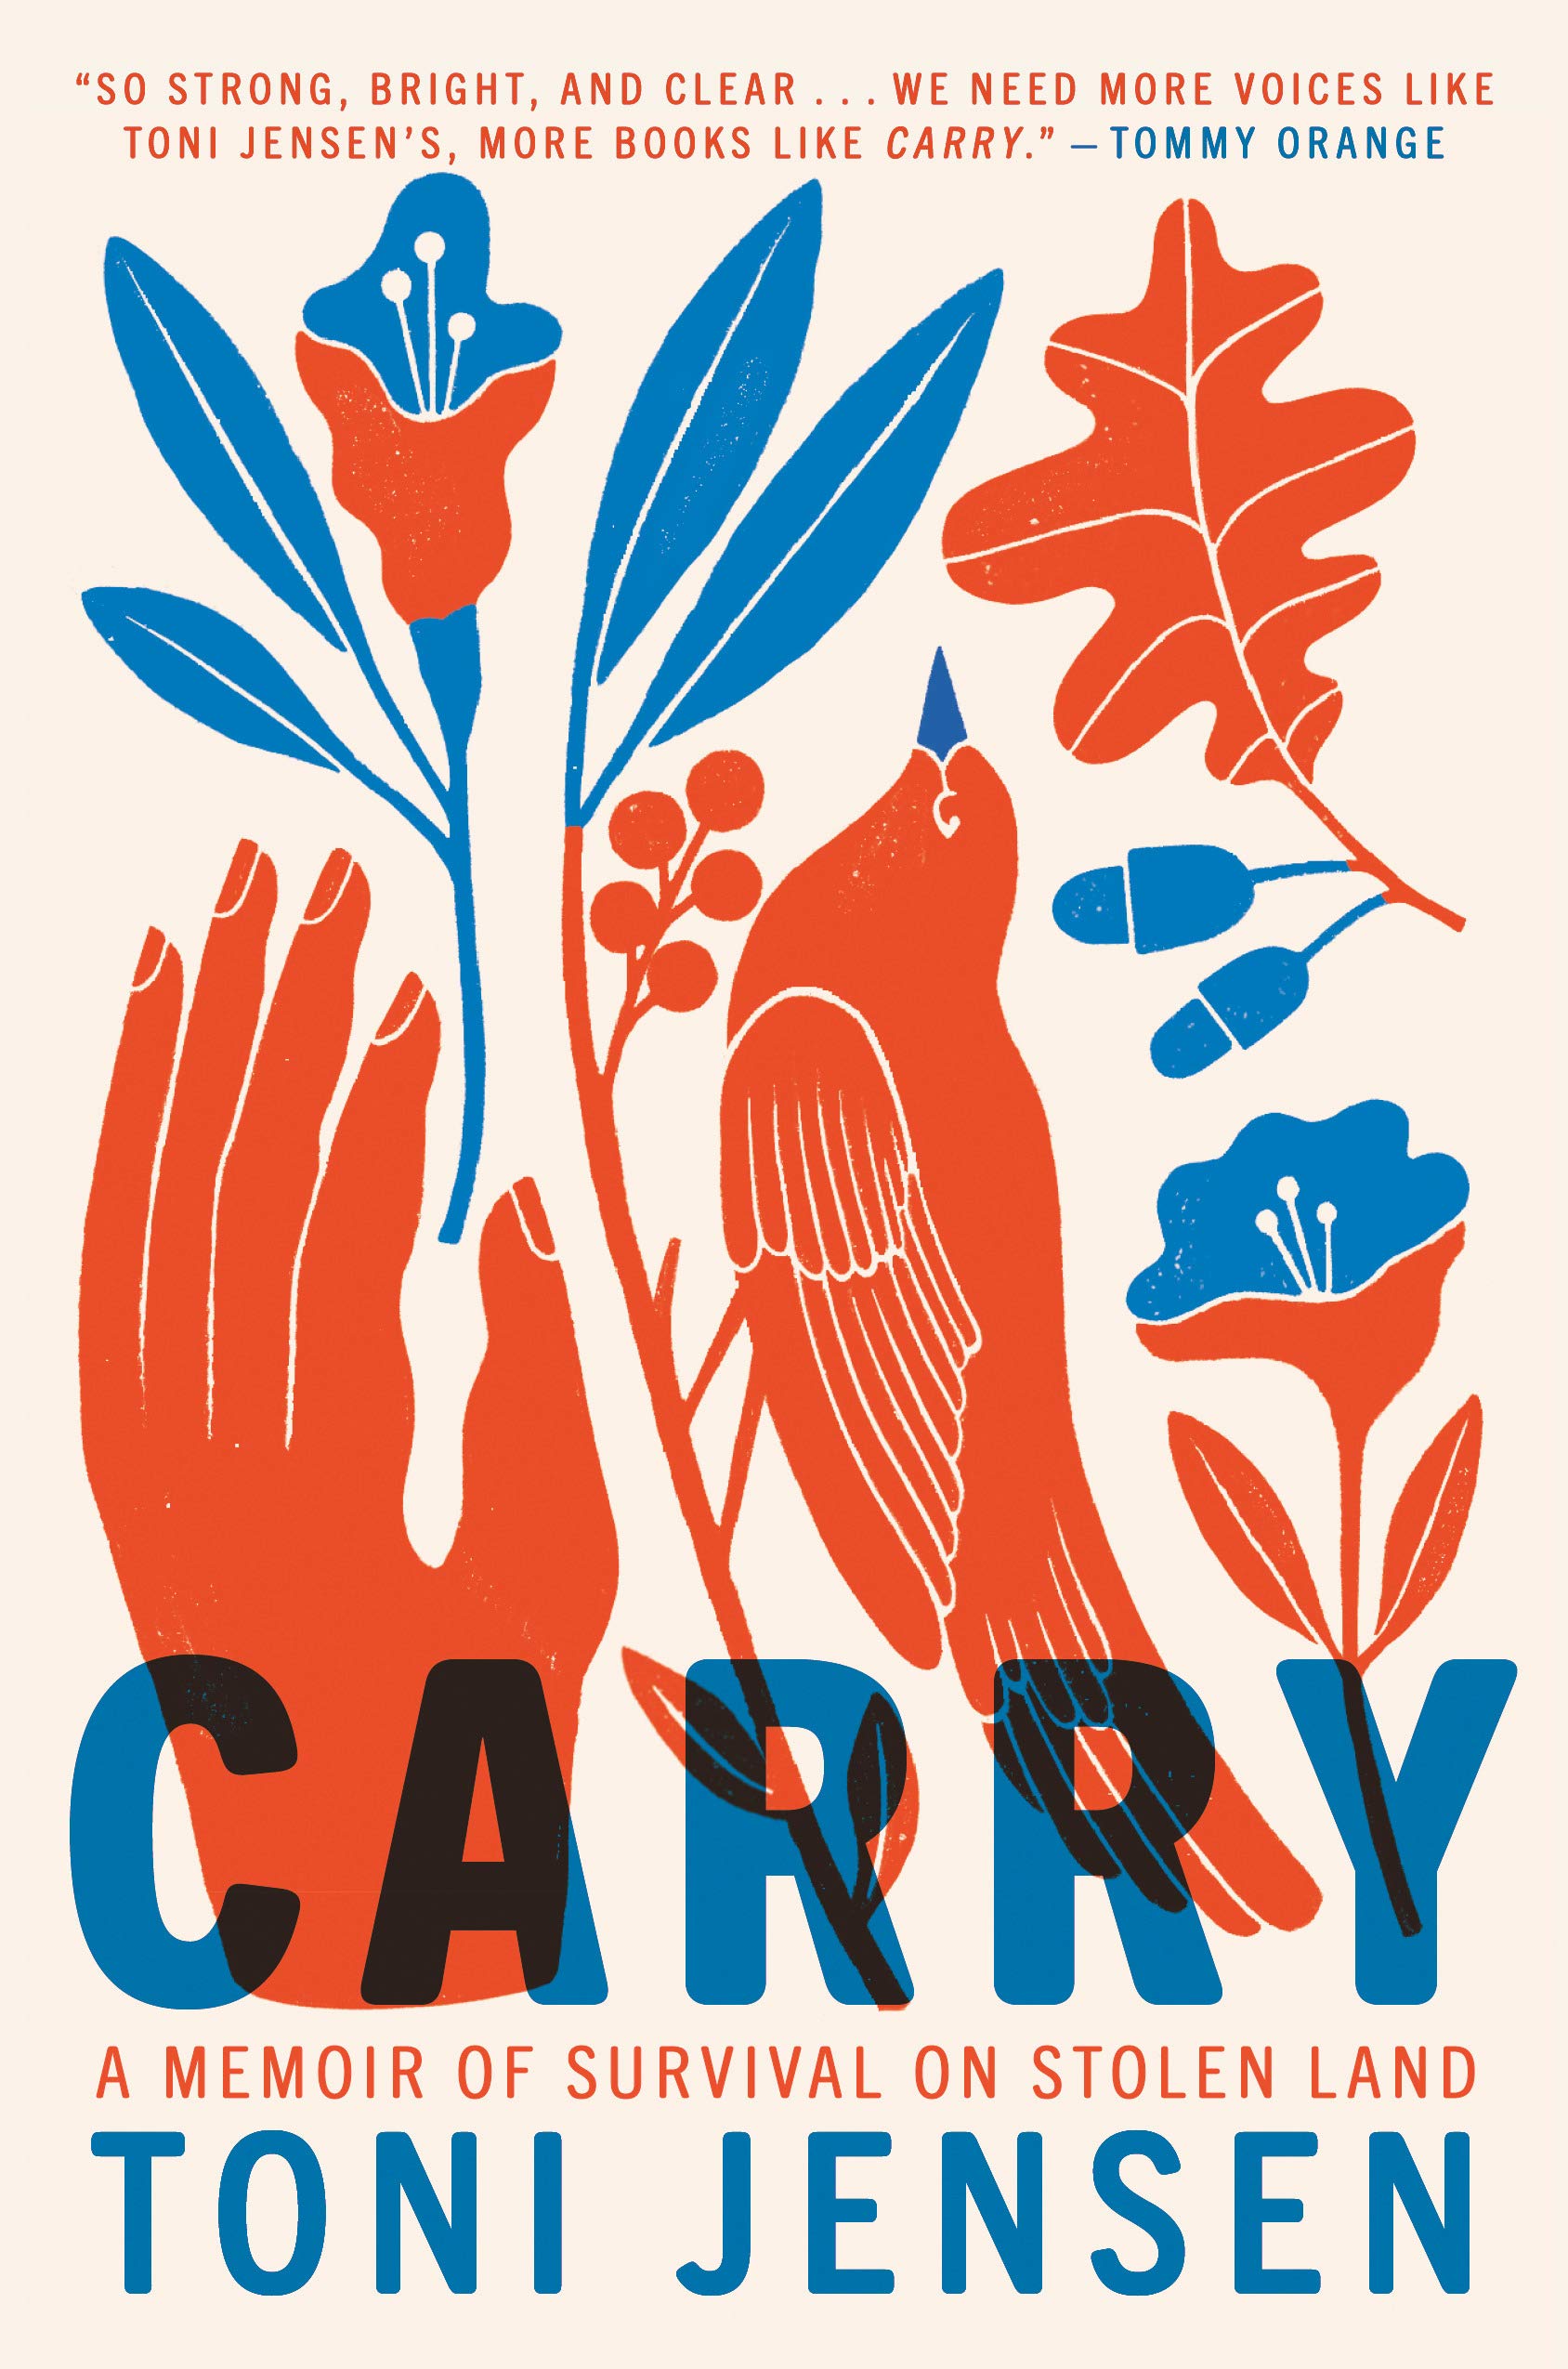 Carry: A Memoir of Survival on Stolen Land (September 2020)